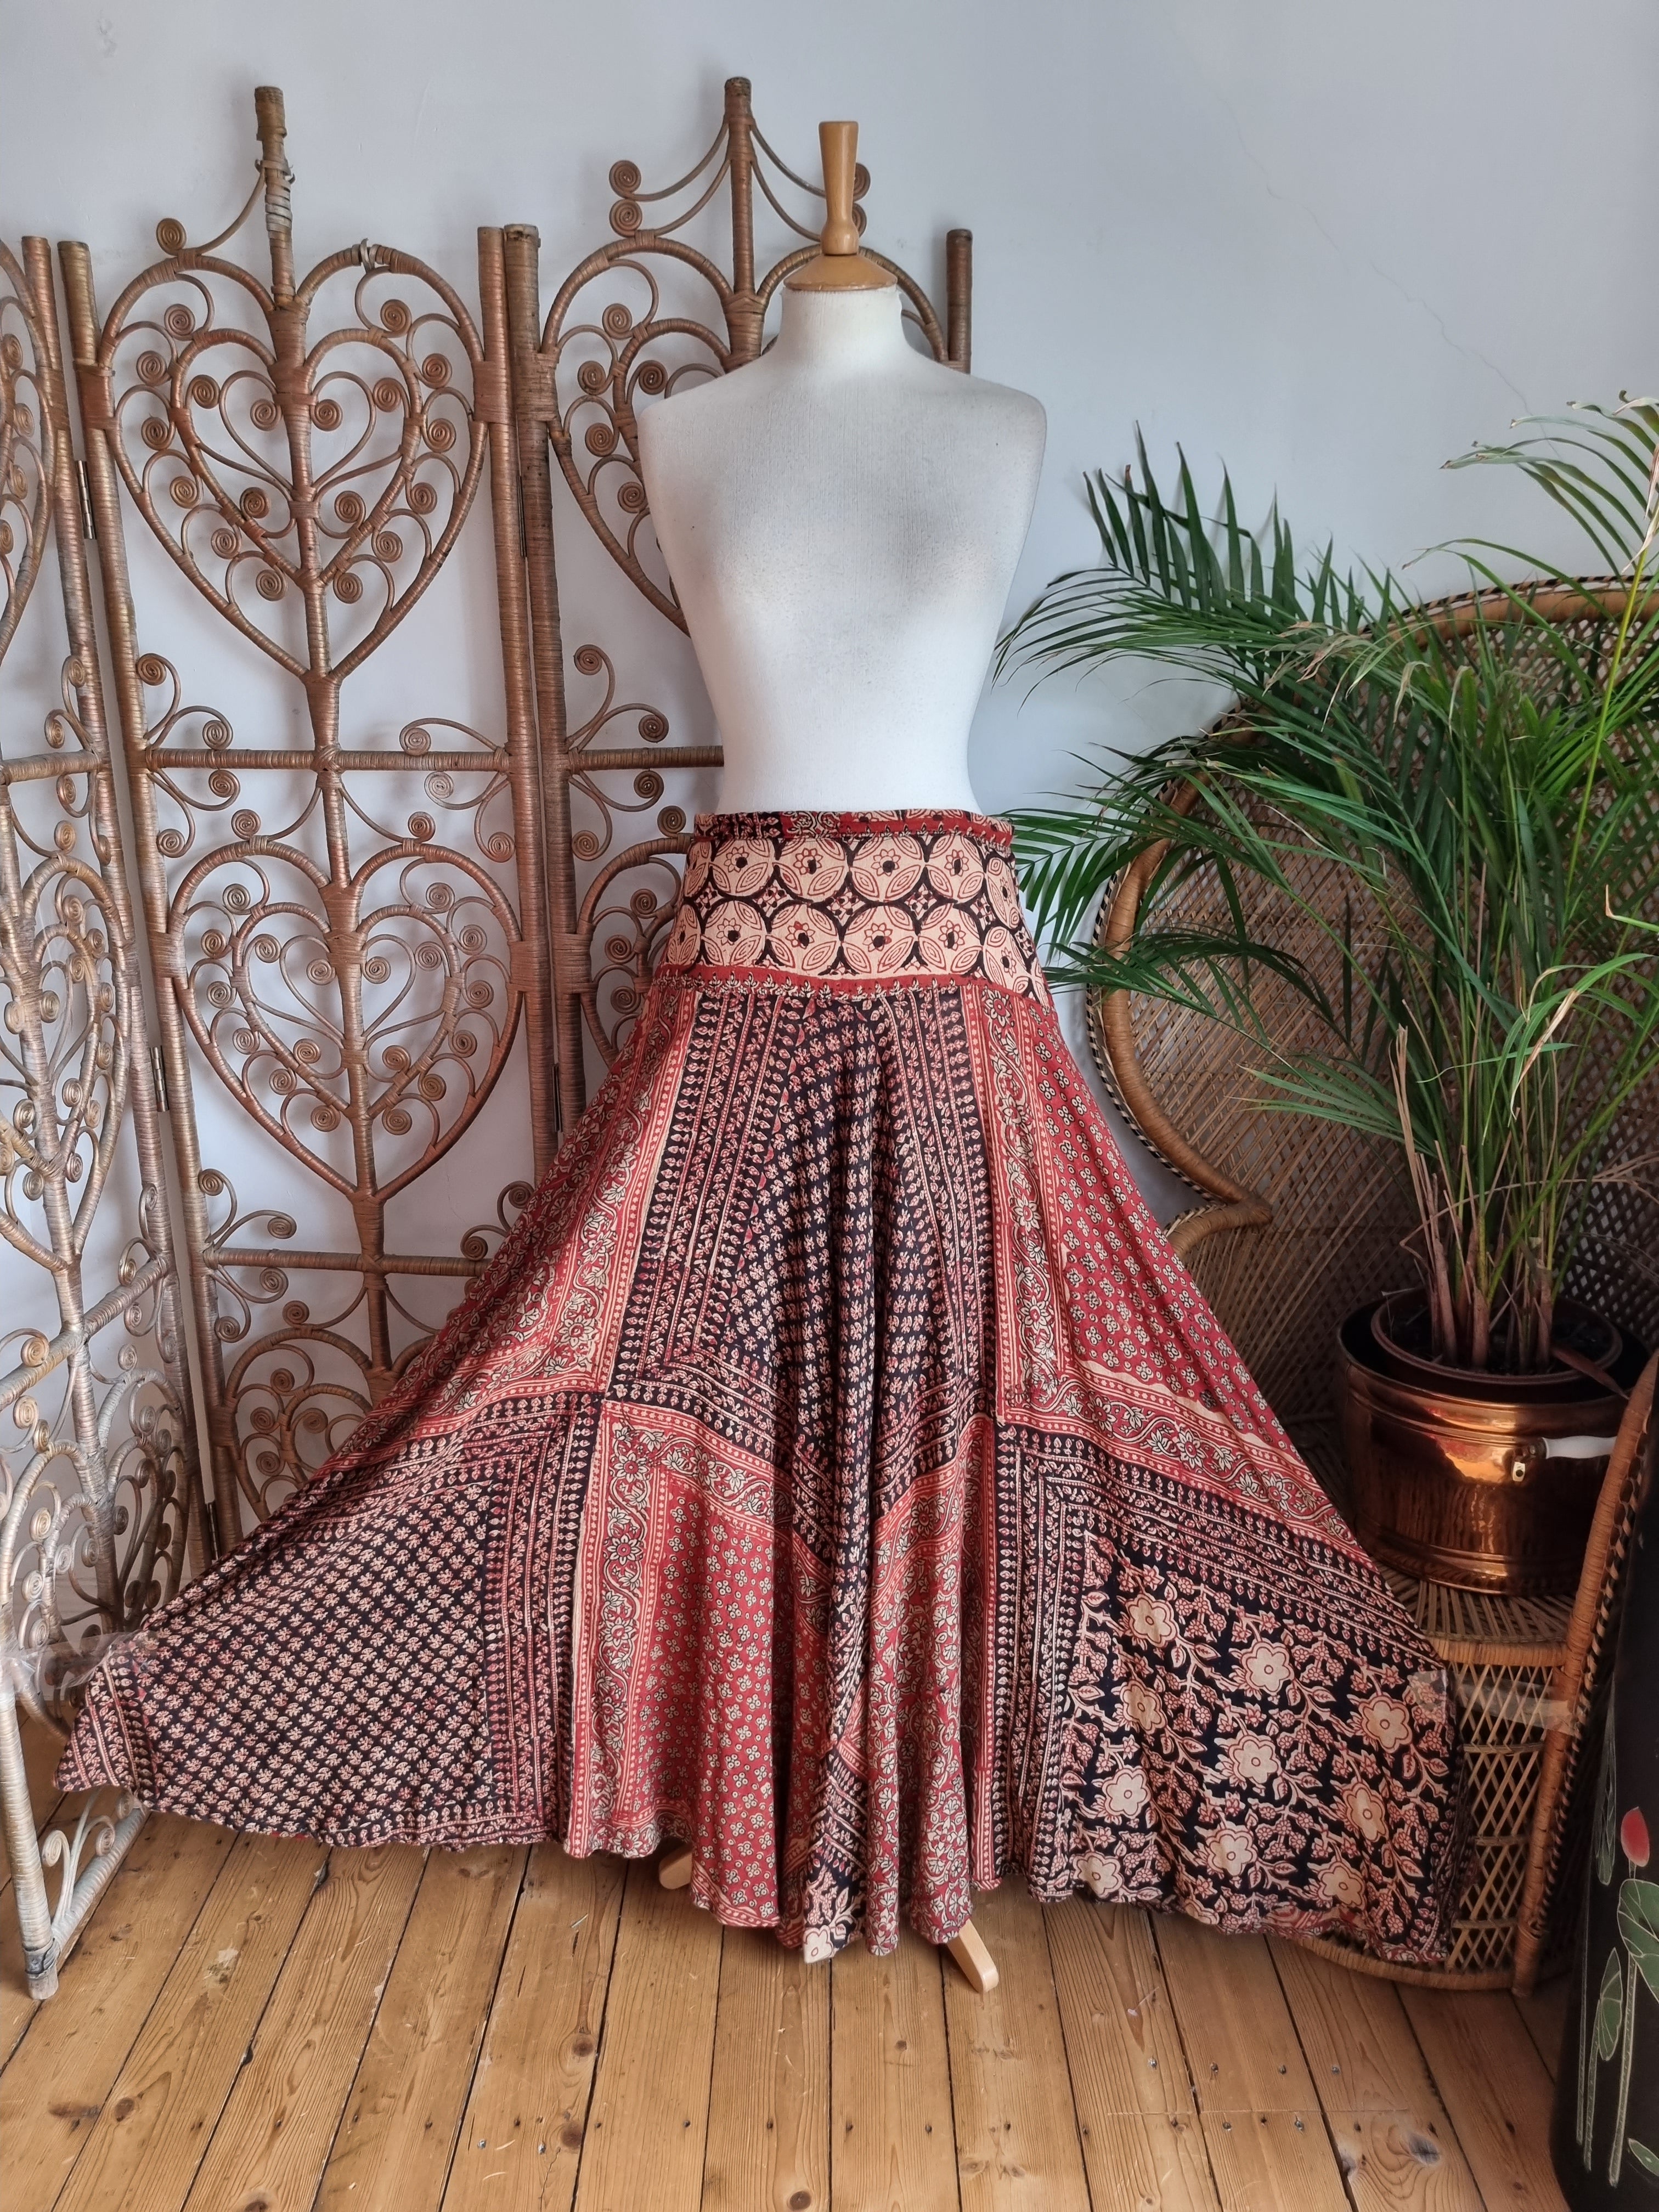 banjara skirts 8 | Rajasthani dress, Stylish dresses, Long skirt outfits